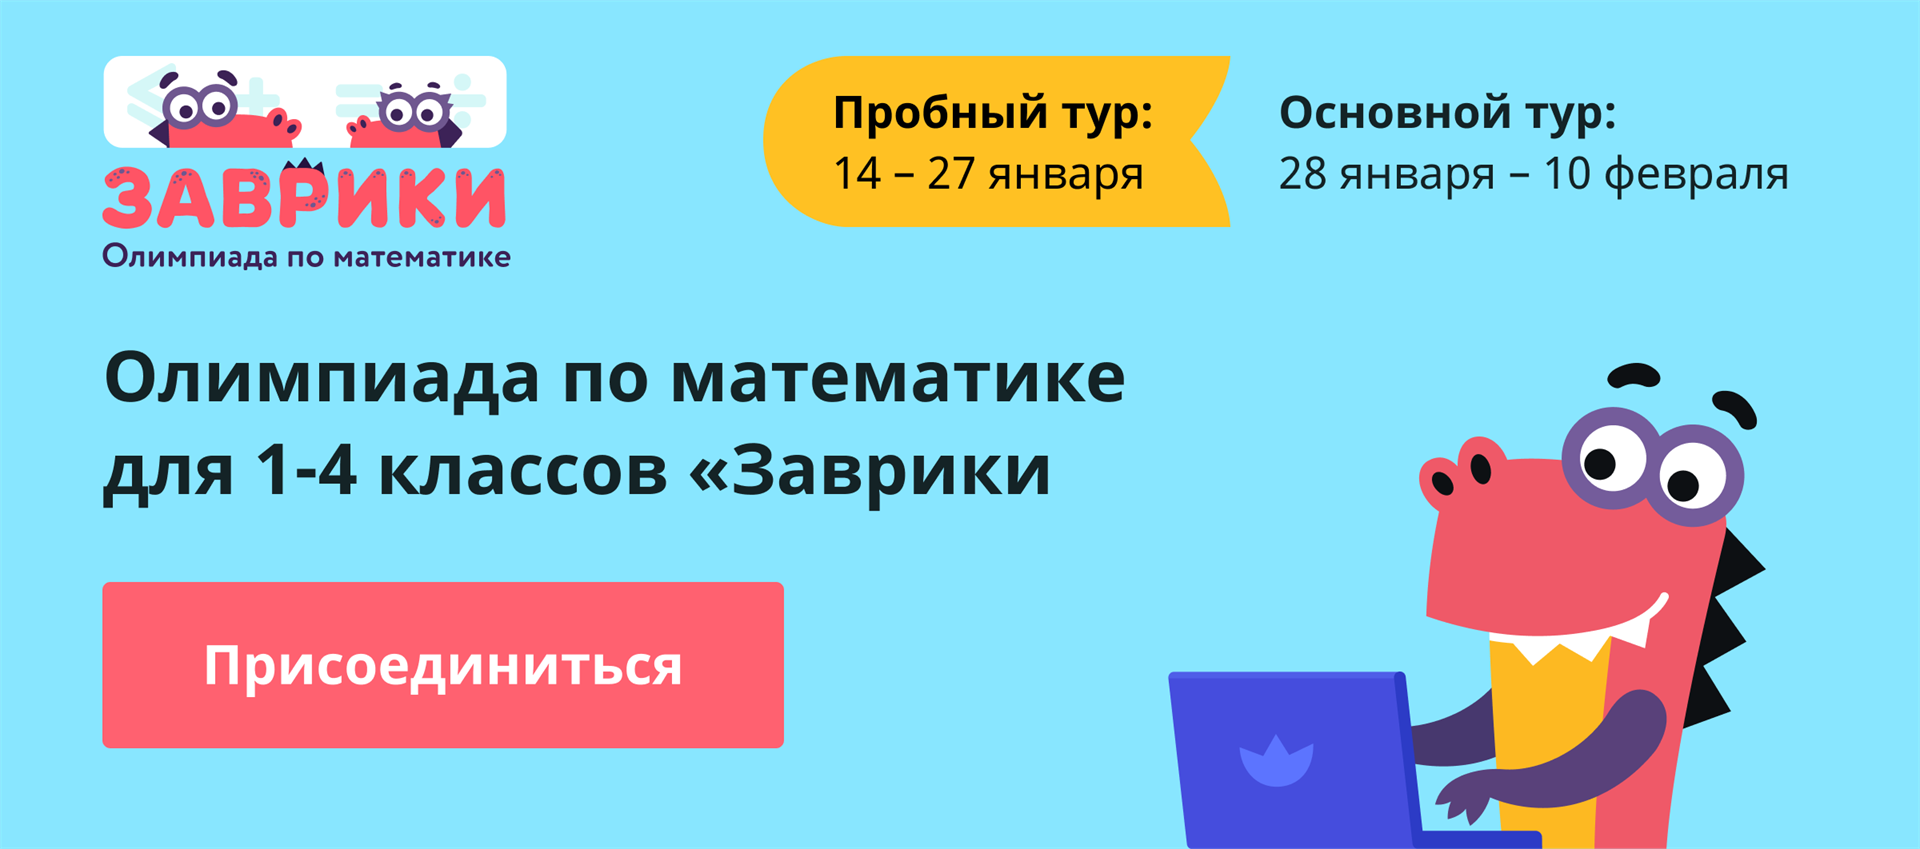 Учи ру ответы 4 класс русский язык. Основной тур. Учи.ру задания по математике.